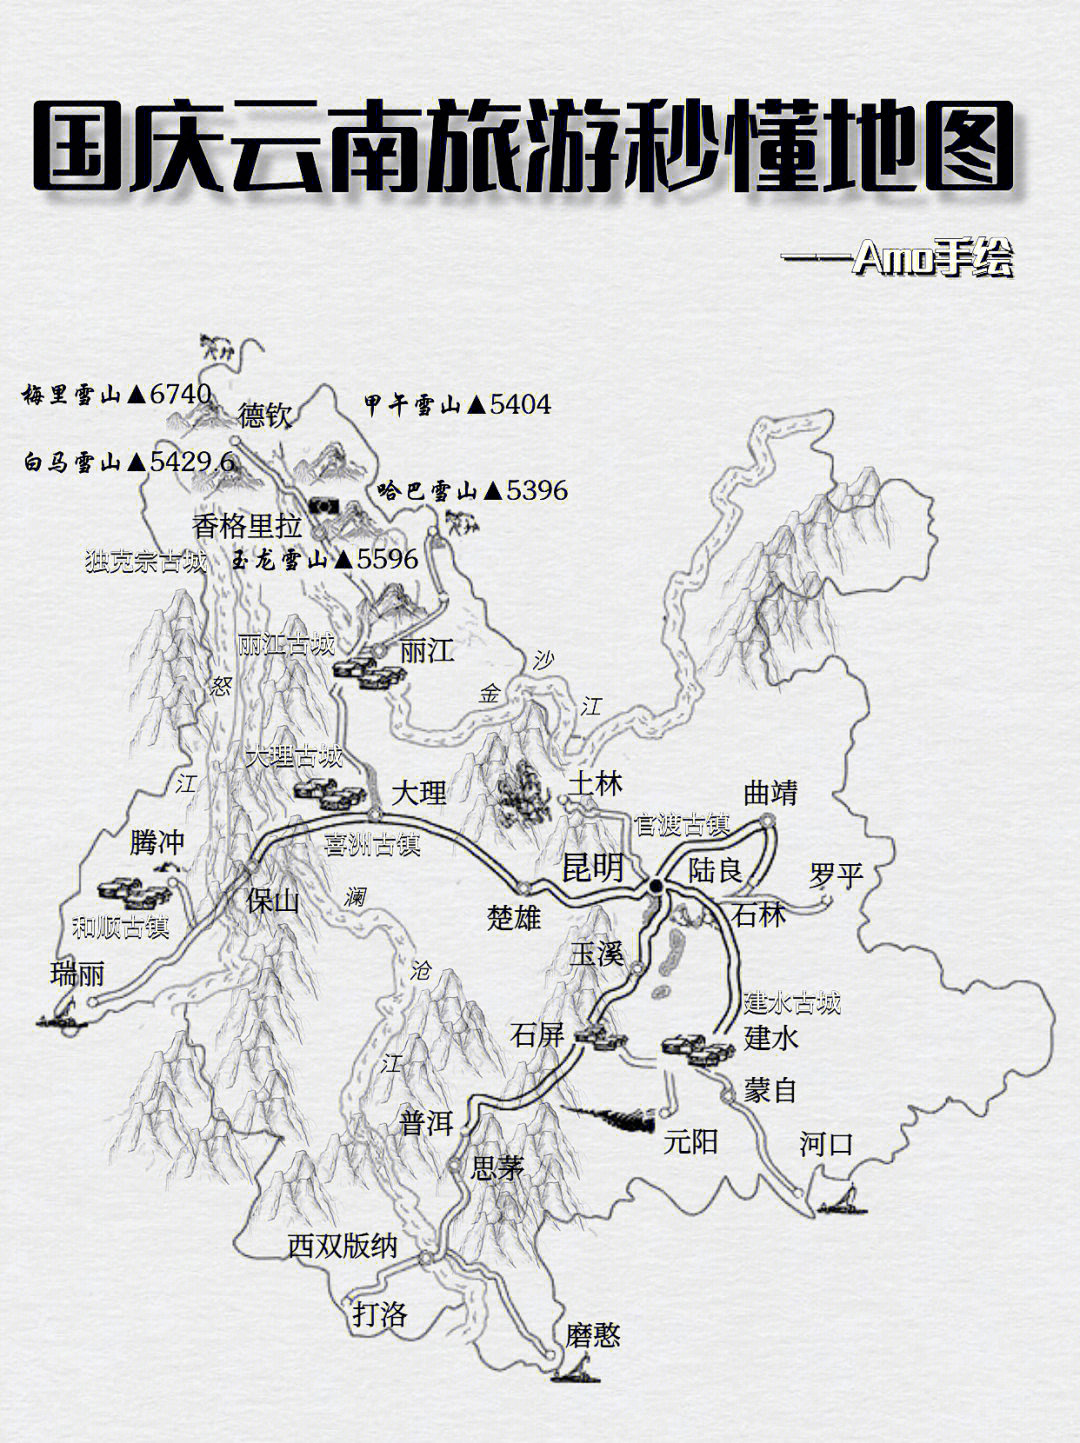 云南省地形图手绘图片